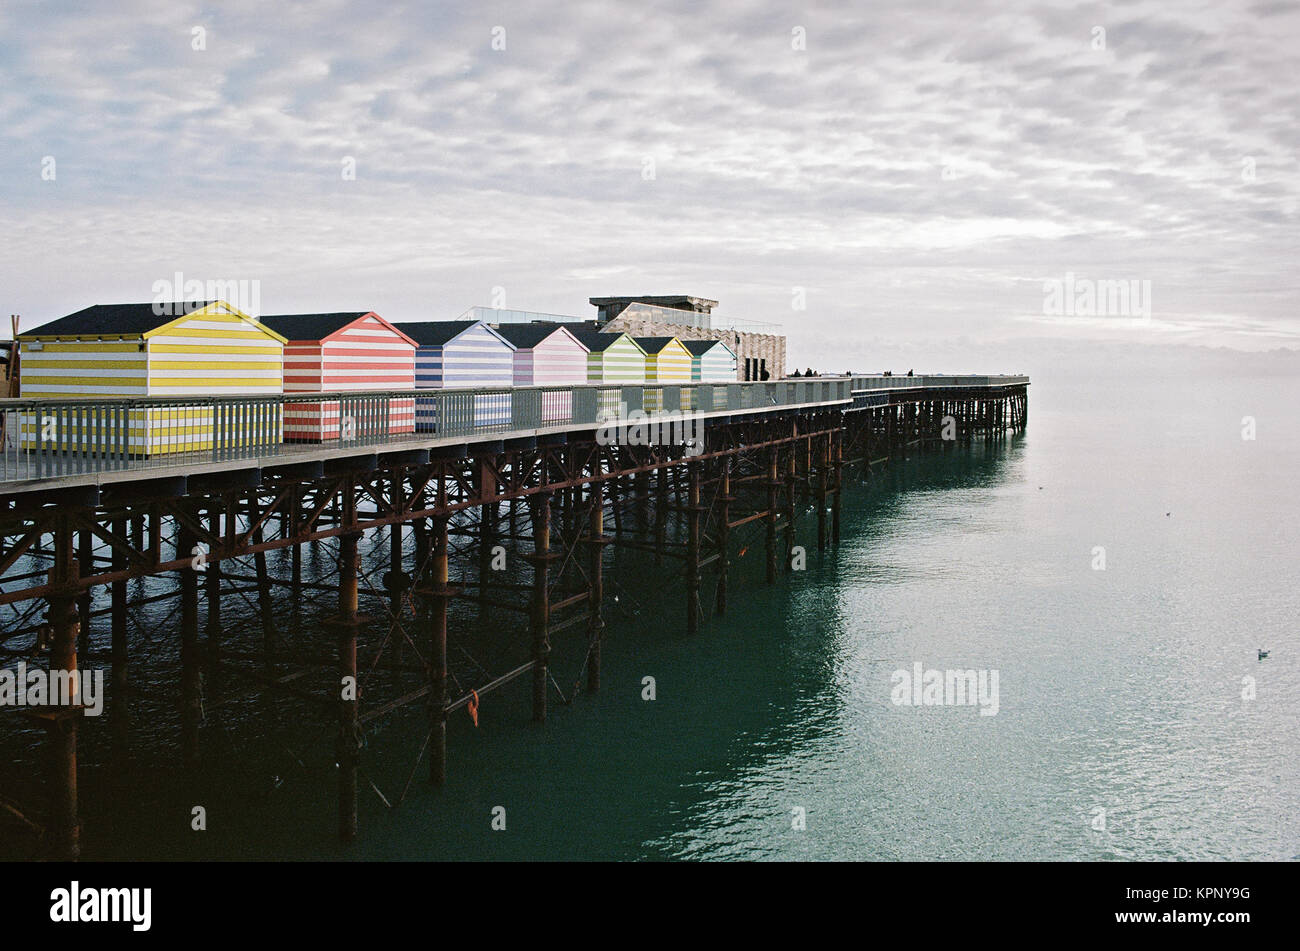 La jetée de Hastings, East Sussex, UK, avec les commerçants, cabines de plage, face à la mer Banque D'Images